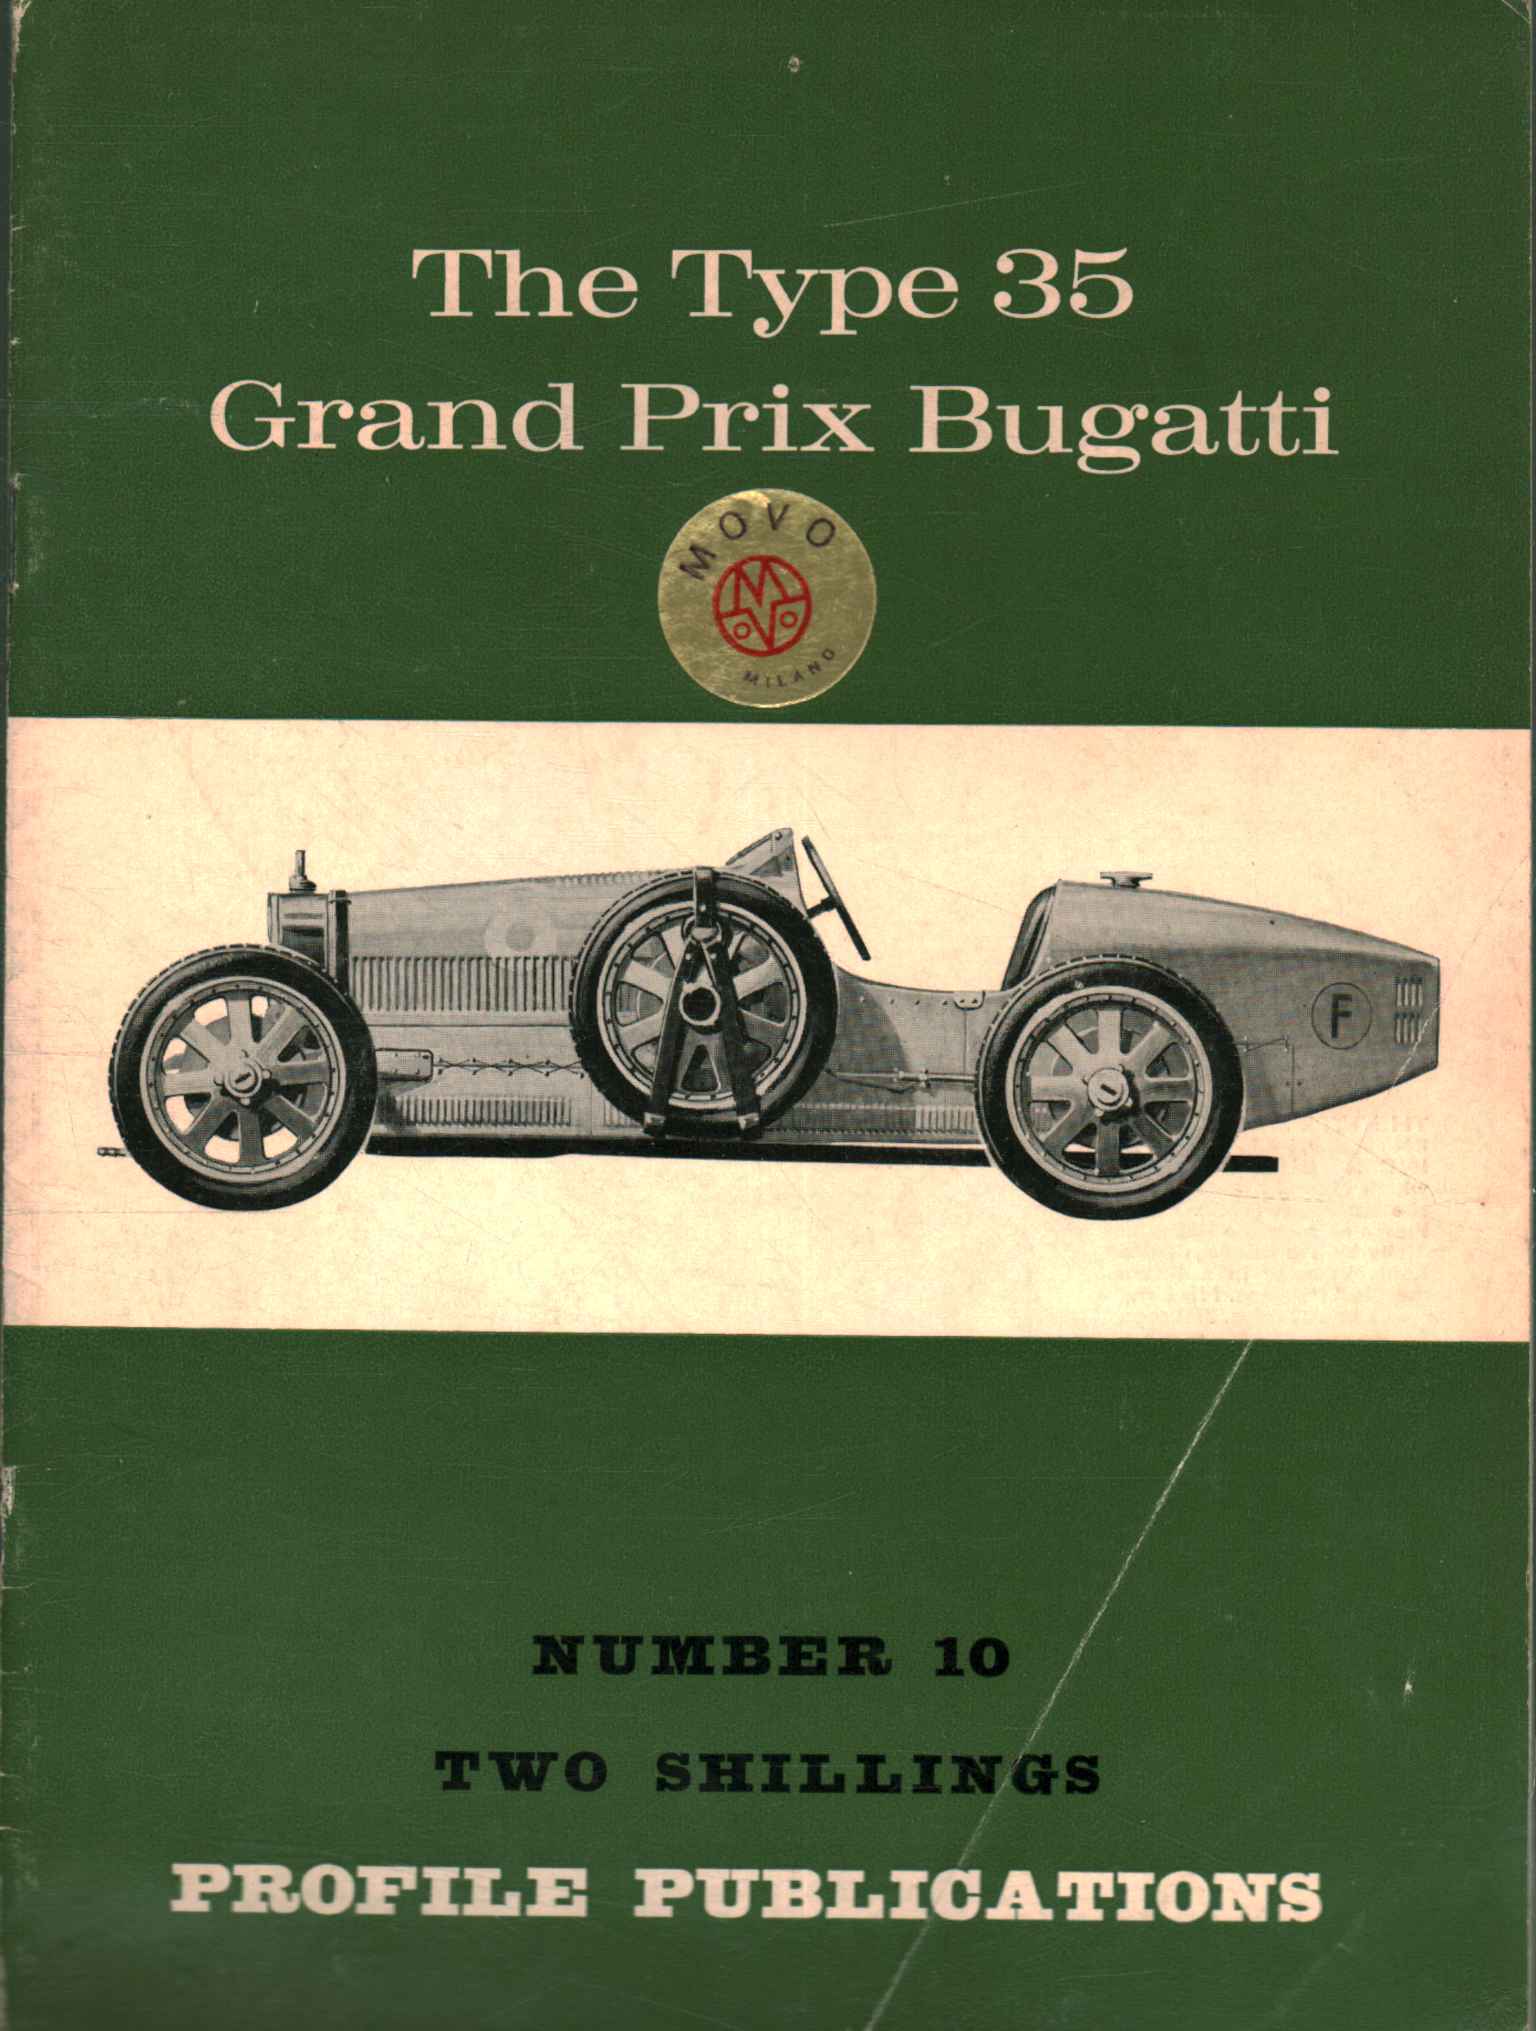 La Bugatti Type 35 Grand Prix